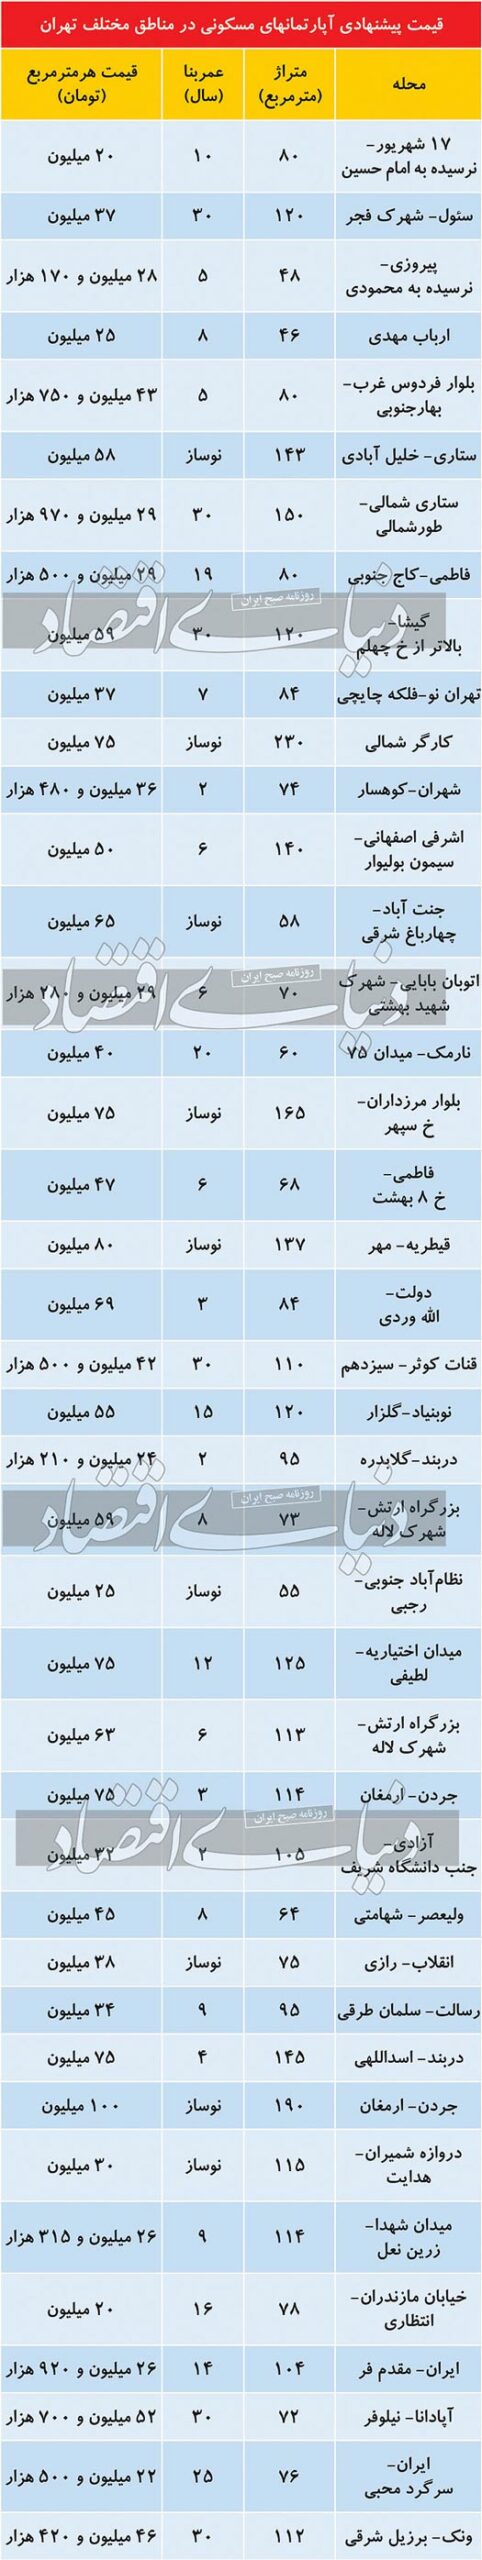 قیمت آپارتمان در بازار خرید و فروش مسکن در تهران